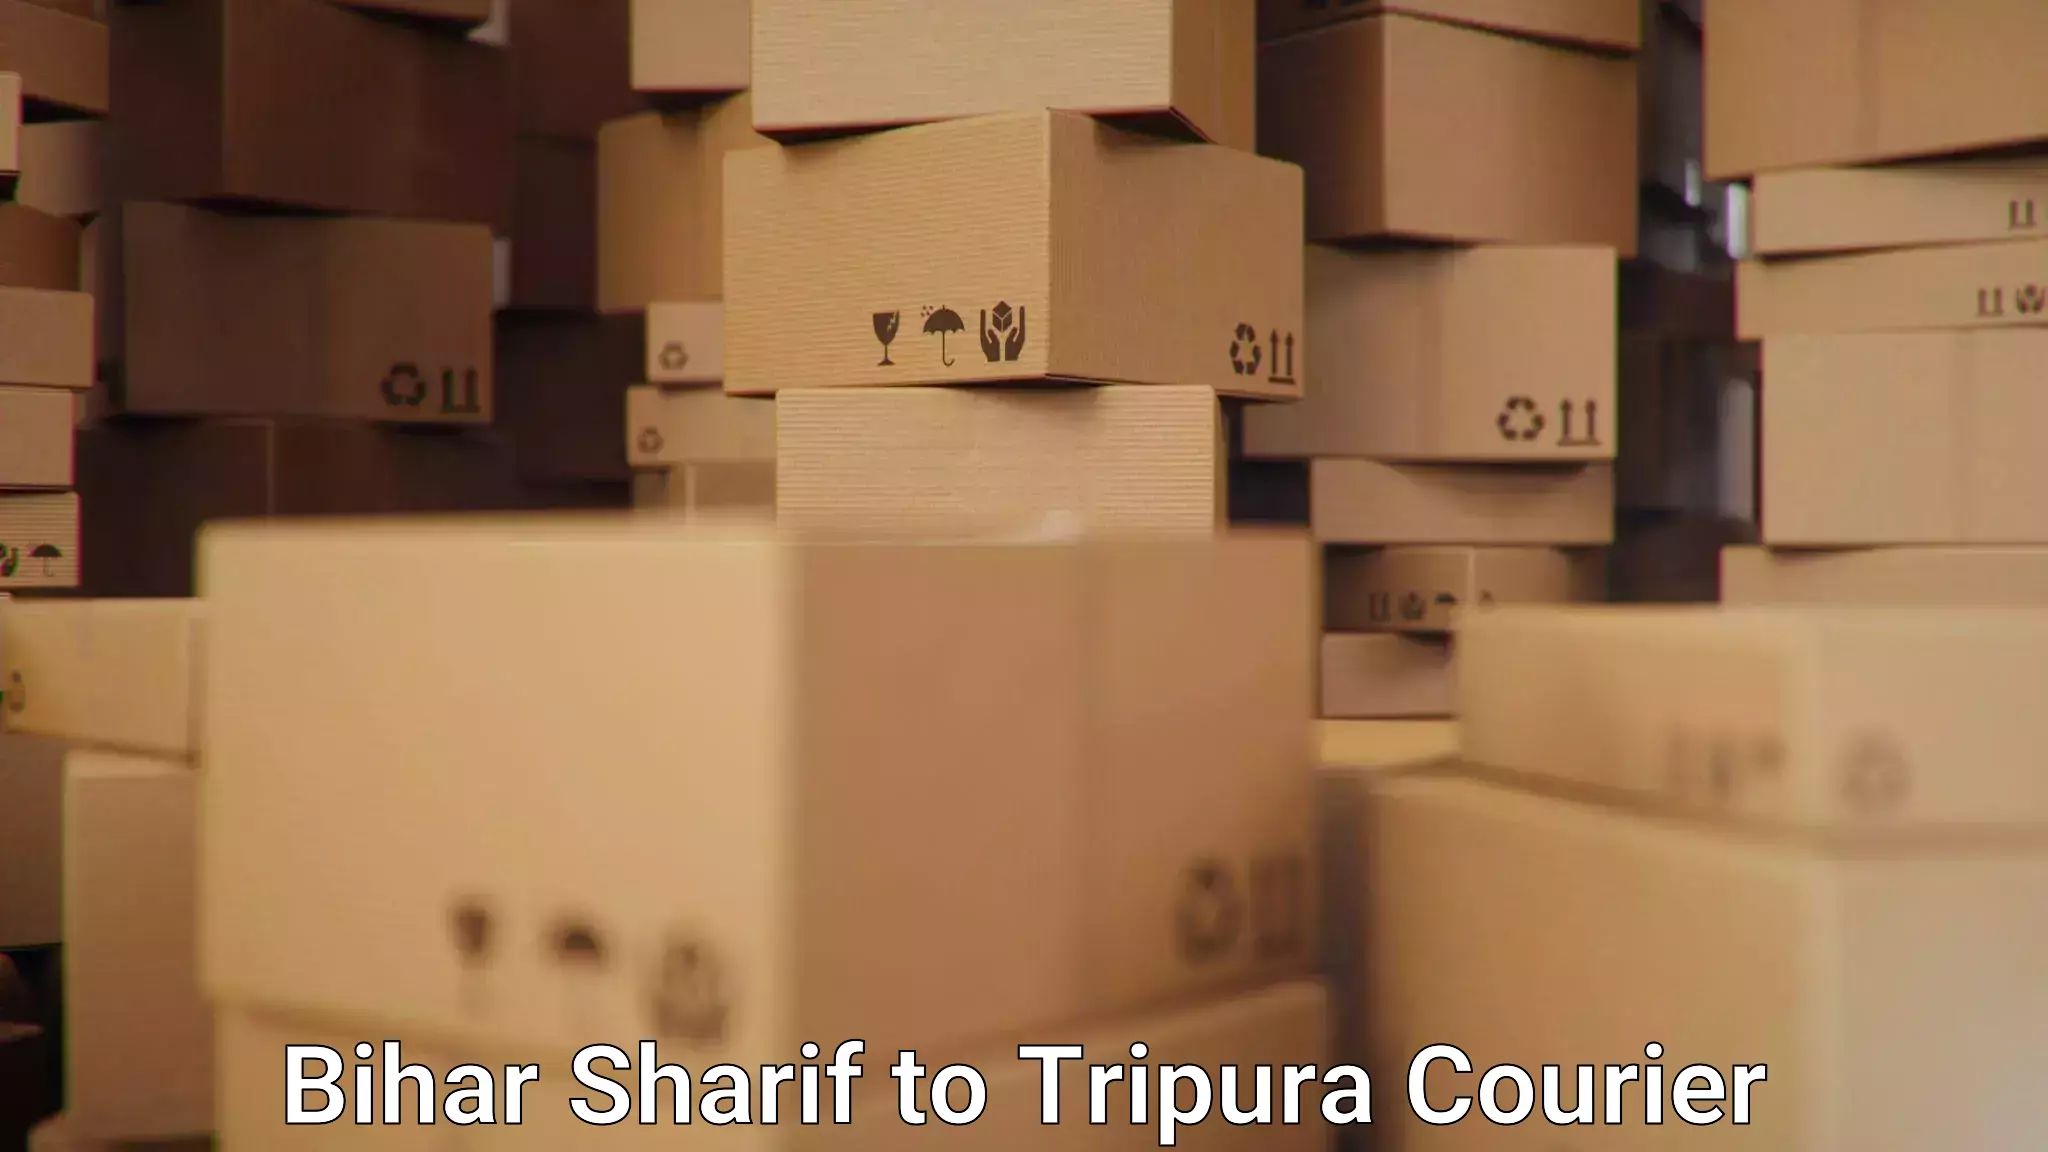 24/7 courier service Bihar Sharif to Bishalgarh